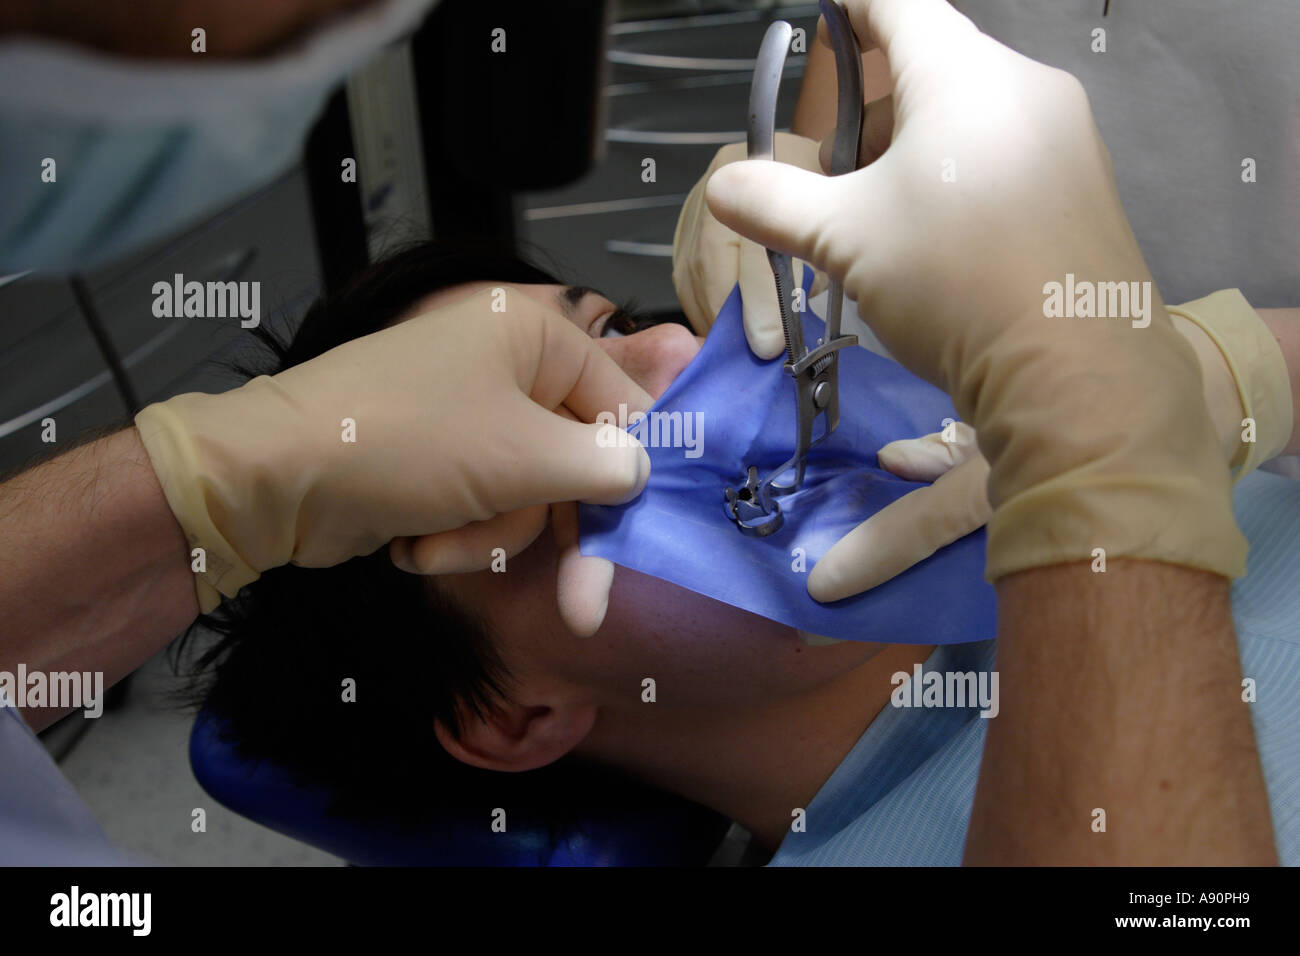 Dental treatment with a cofferdam - Behandlung mit Kofferdamm beim Zahnarzt Stock Photo